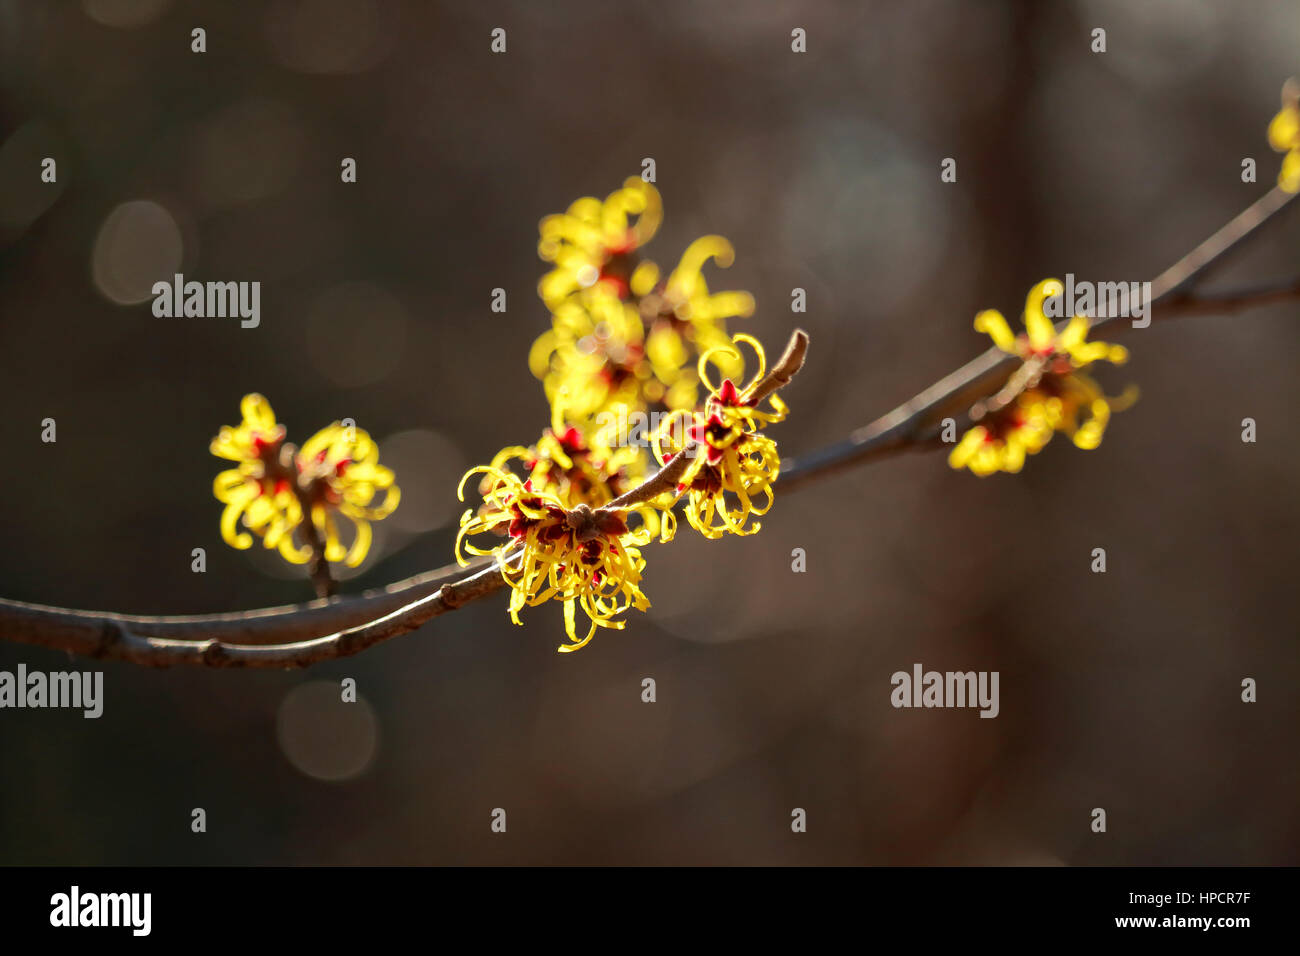 L'hamamélis, aka, Winterbloom, hamamélis, fleurs, fleurs en hiver. Photographié avec une faible profondeur de champ. Banque D'Images